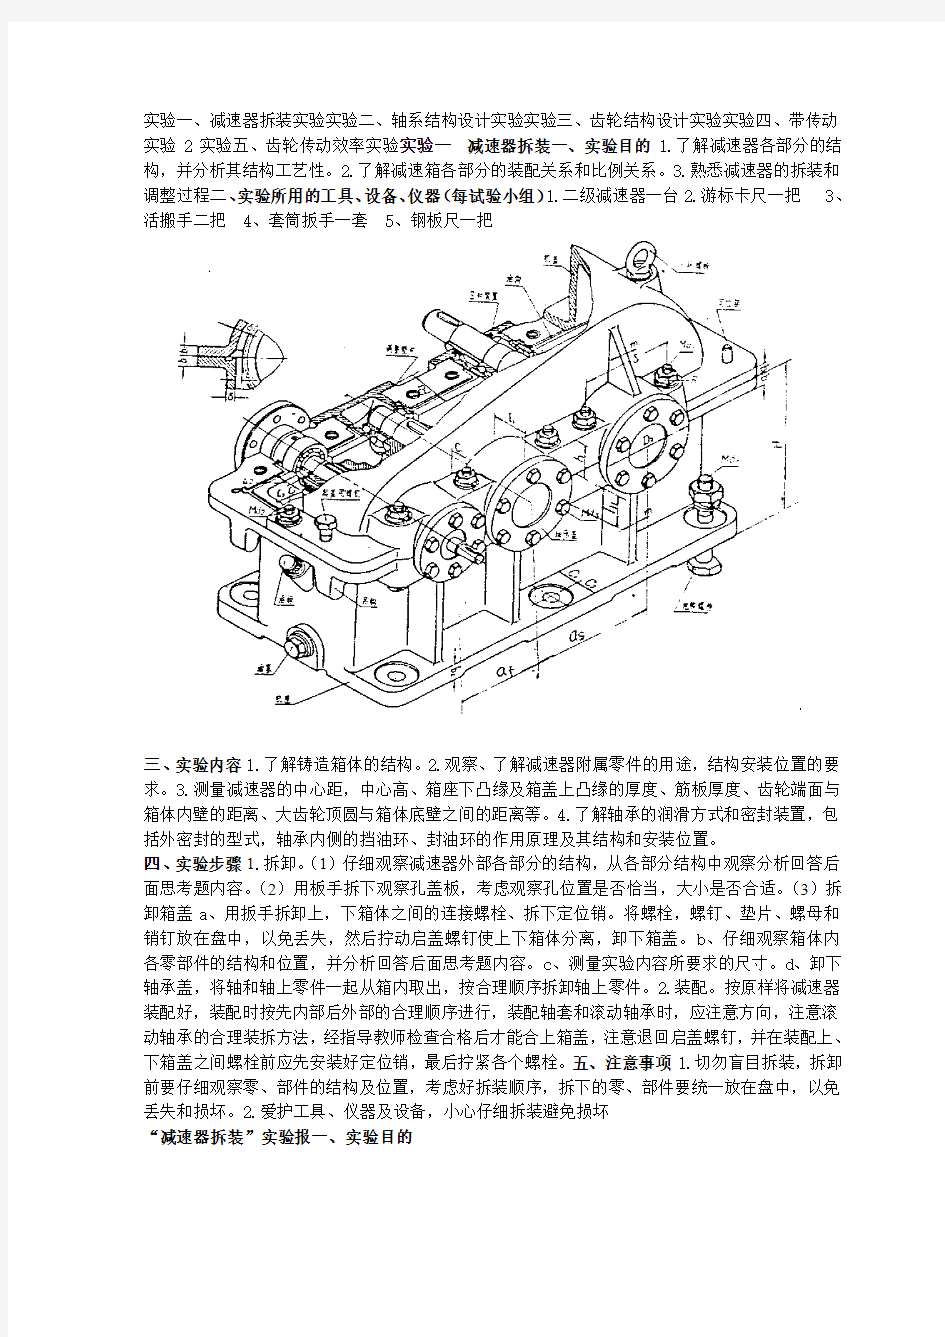 机械设计实验指导书(1)